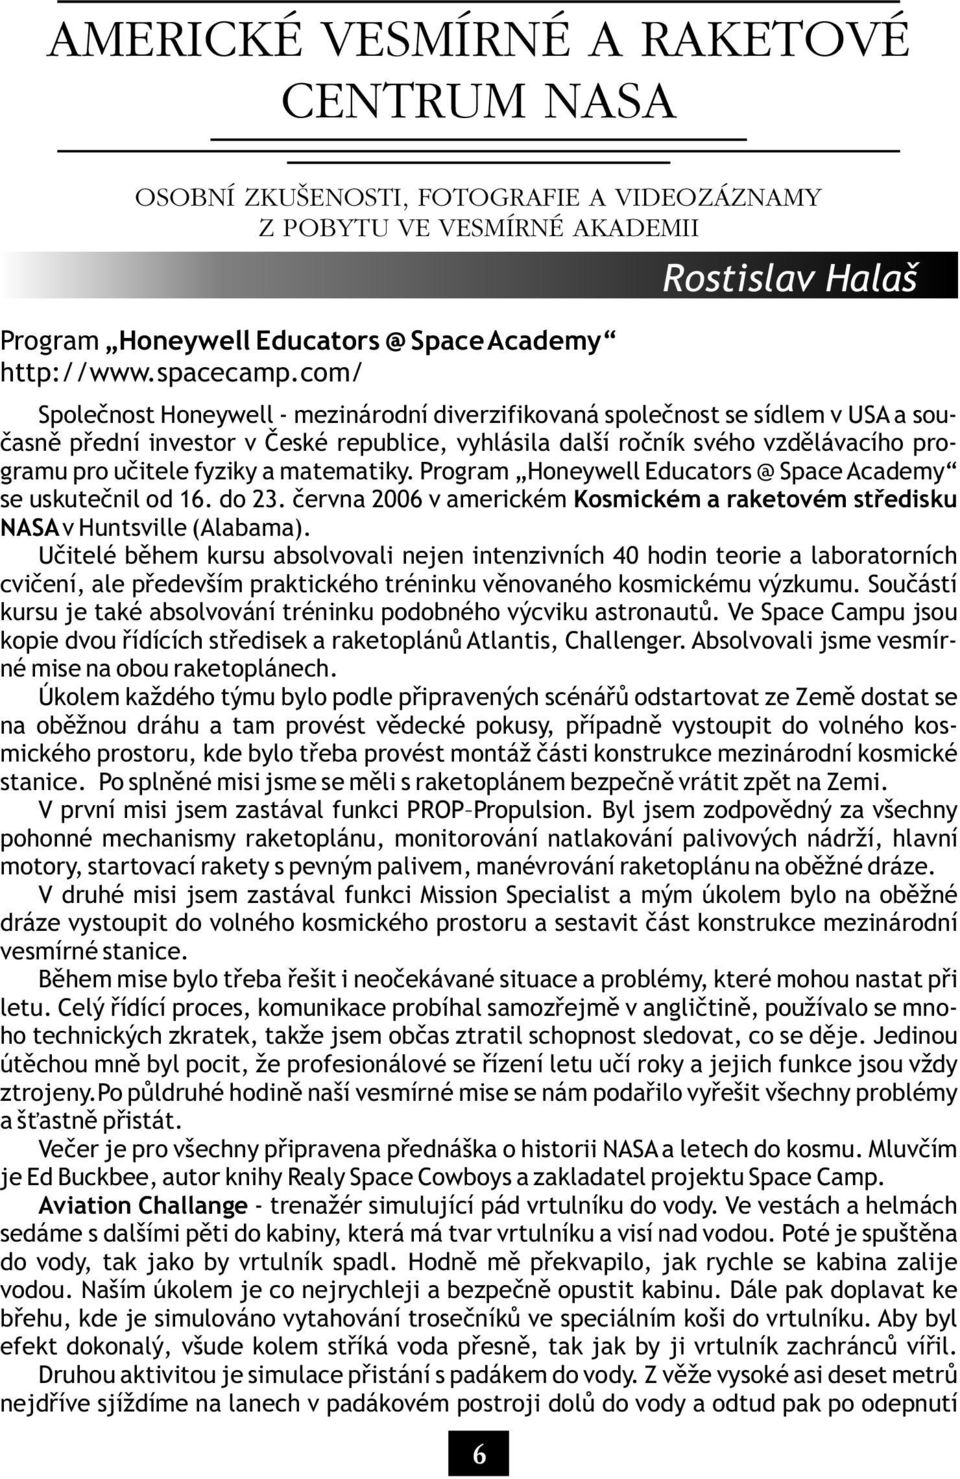 uèitele fyziky a matematiky. Program Honeywell Educators @ Space Academy se uskuteènil od 16. do 23. èervna 2006 v americkém Kosmickém a raketovém støedisku NASA v Huntsville (Alabama).